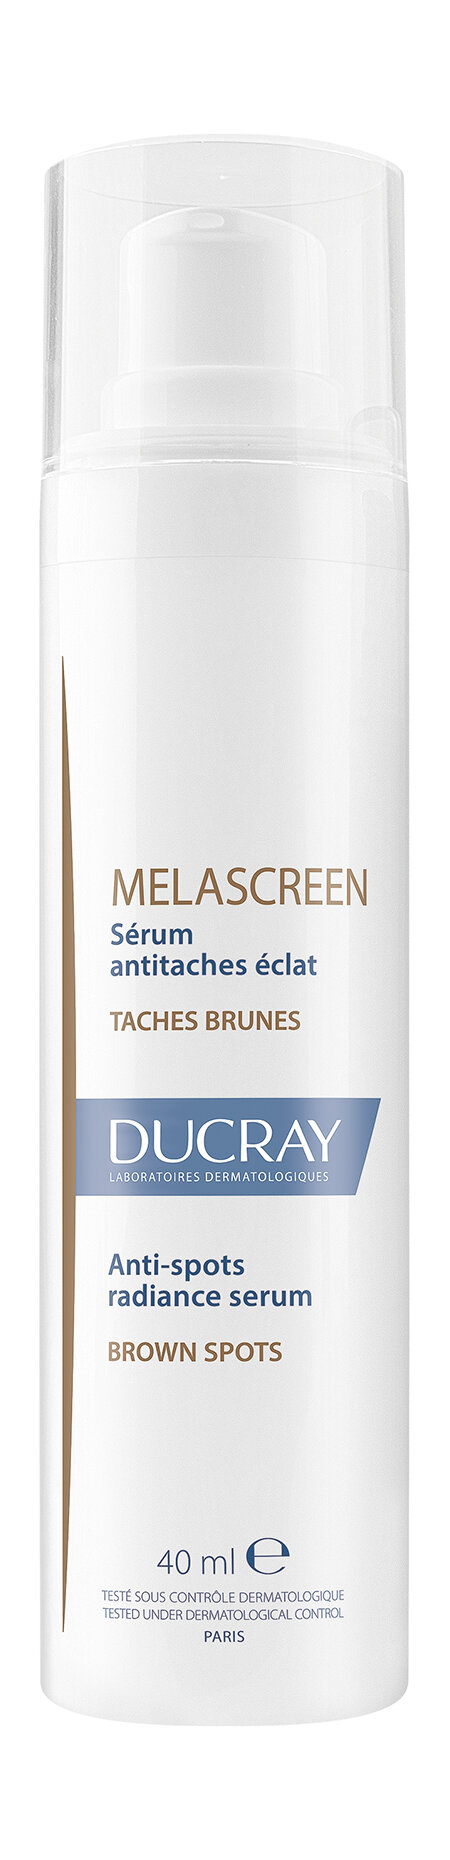 DUCRAY Ducray Melascreen Сыворотка против пигментации придающая сияние коже, 40 мл